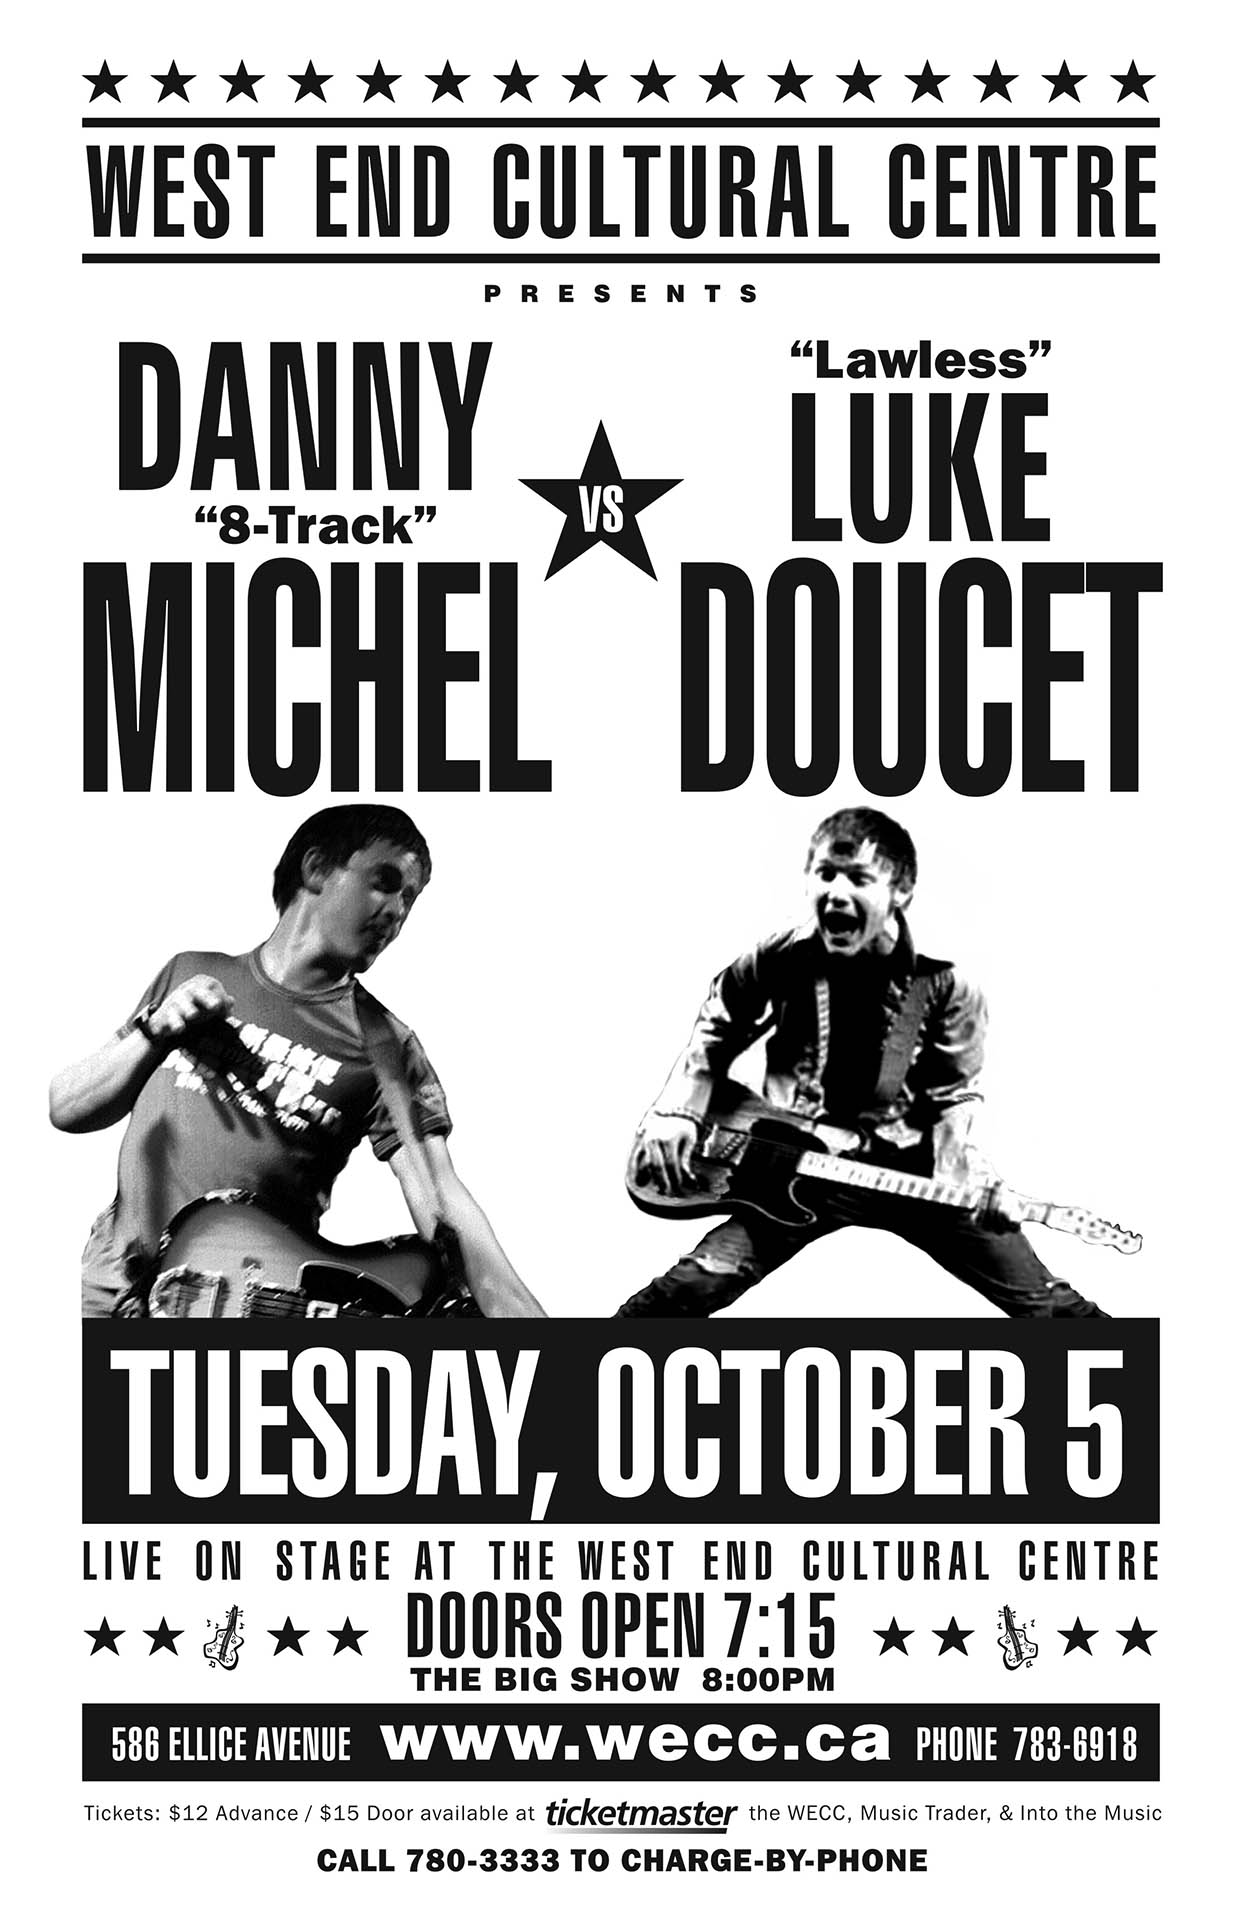 Danny Michel vs Luke Doucet - 2004